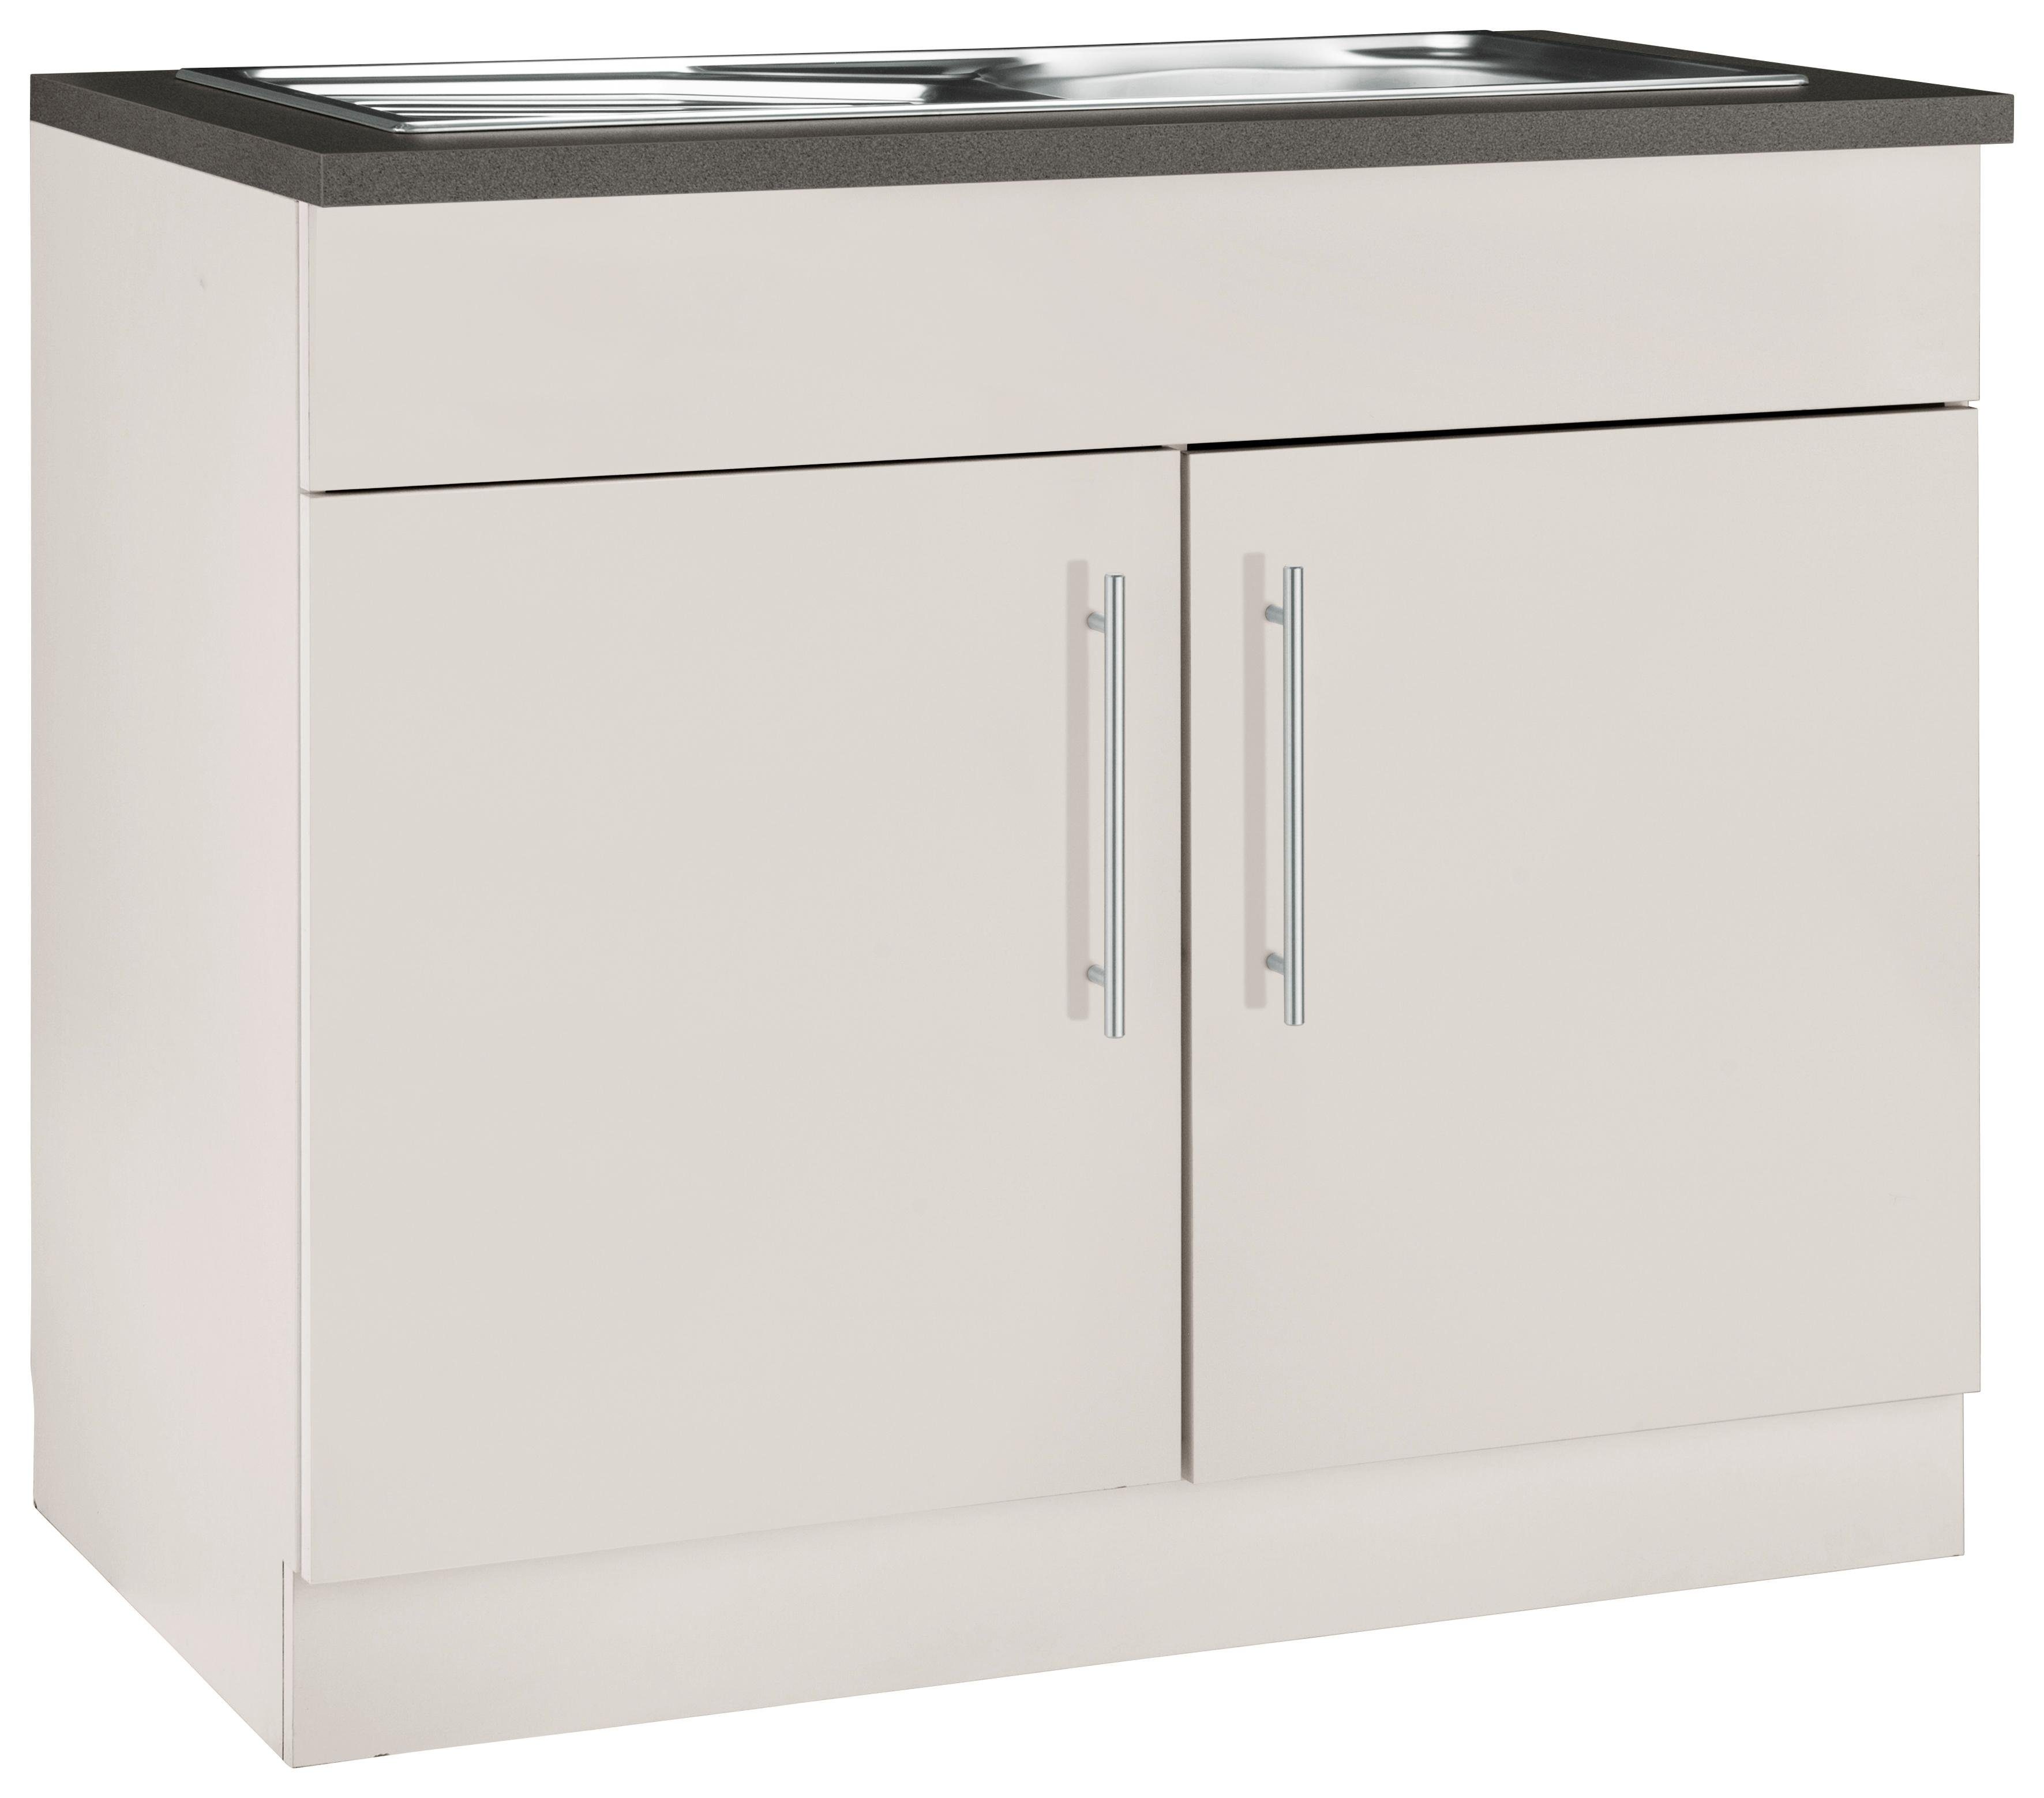 wiho Küchen Spülenschrank Cali 100 cm breit Front und Korpus: Cashmere, Arbeitsbplatte: Granit Grau | Cashmere